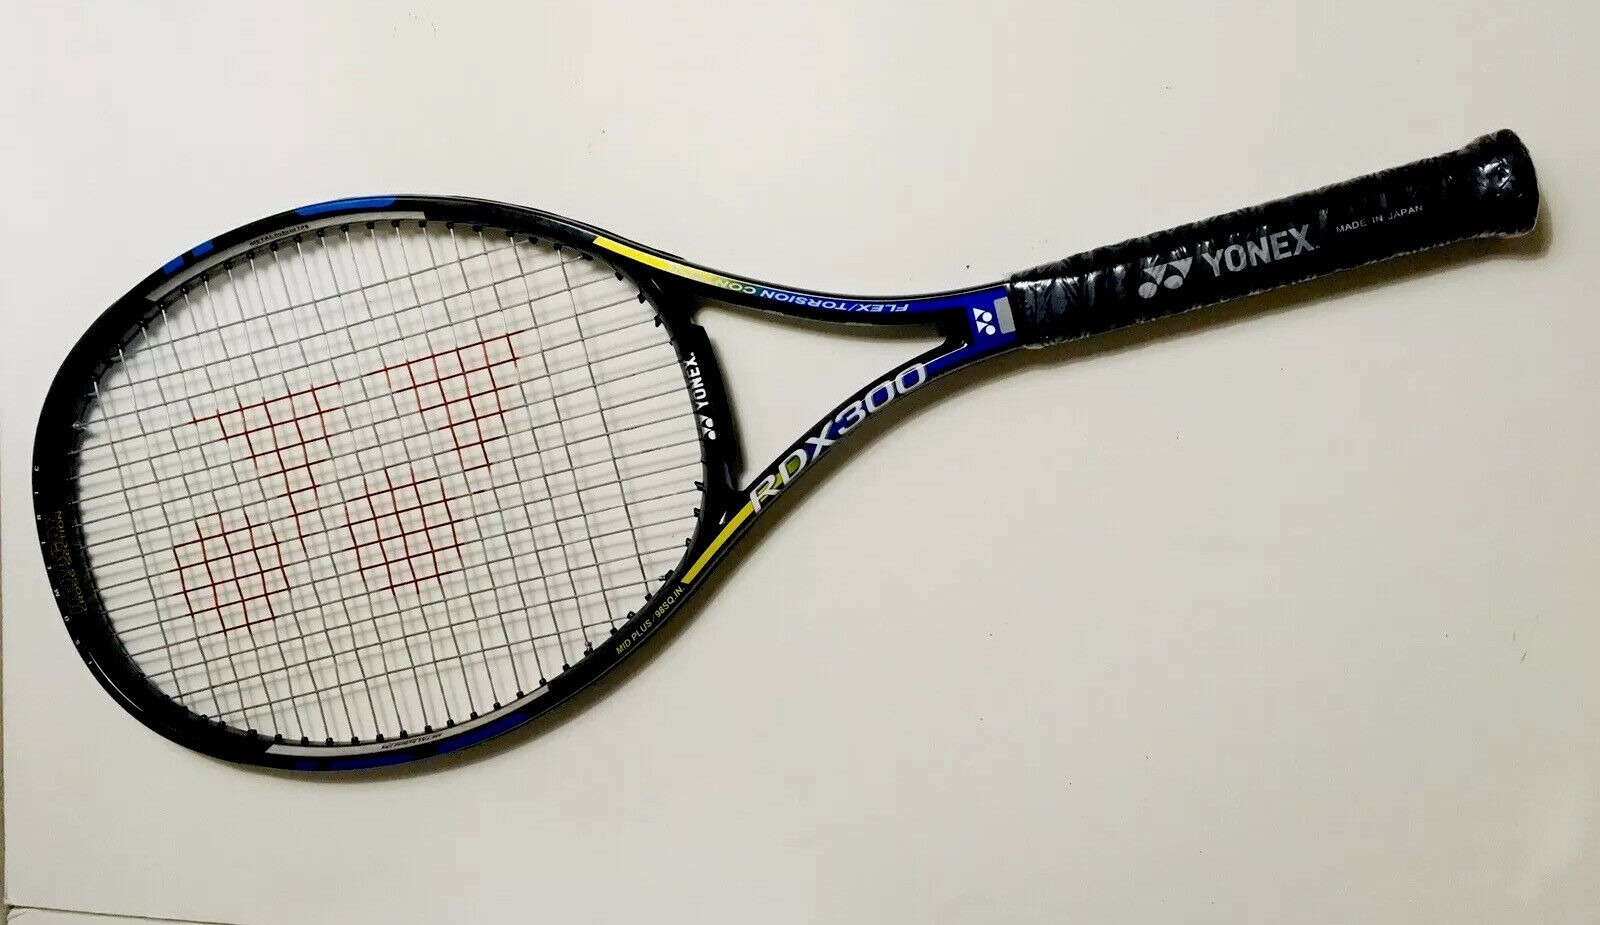 840円 【SALE／78%OFF】 ヨネックス テニスラケット RDX300